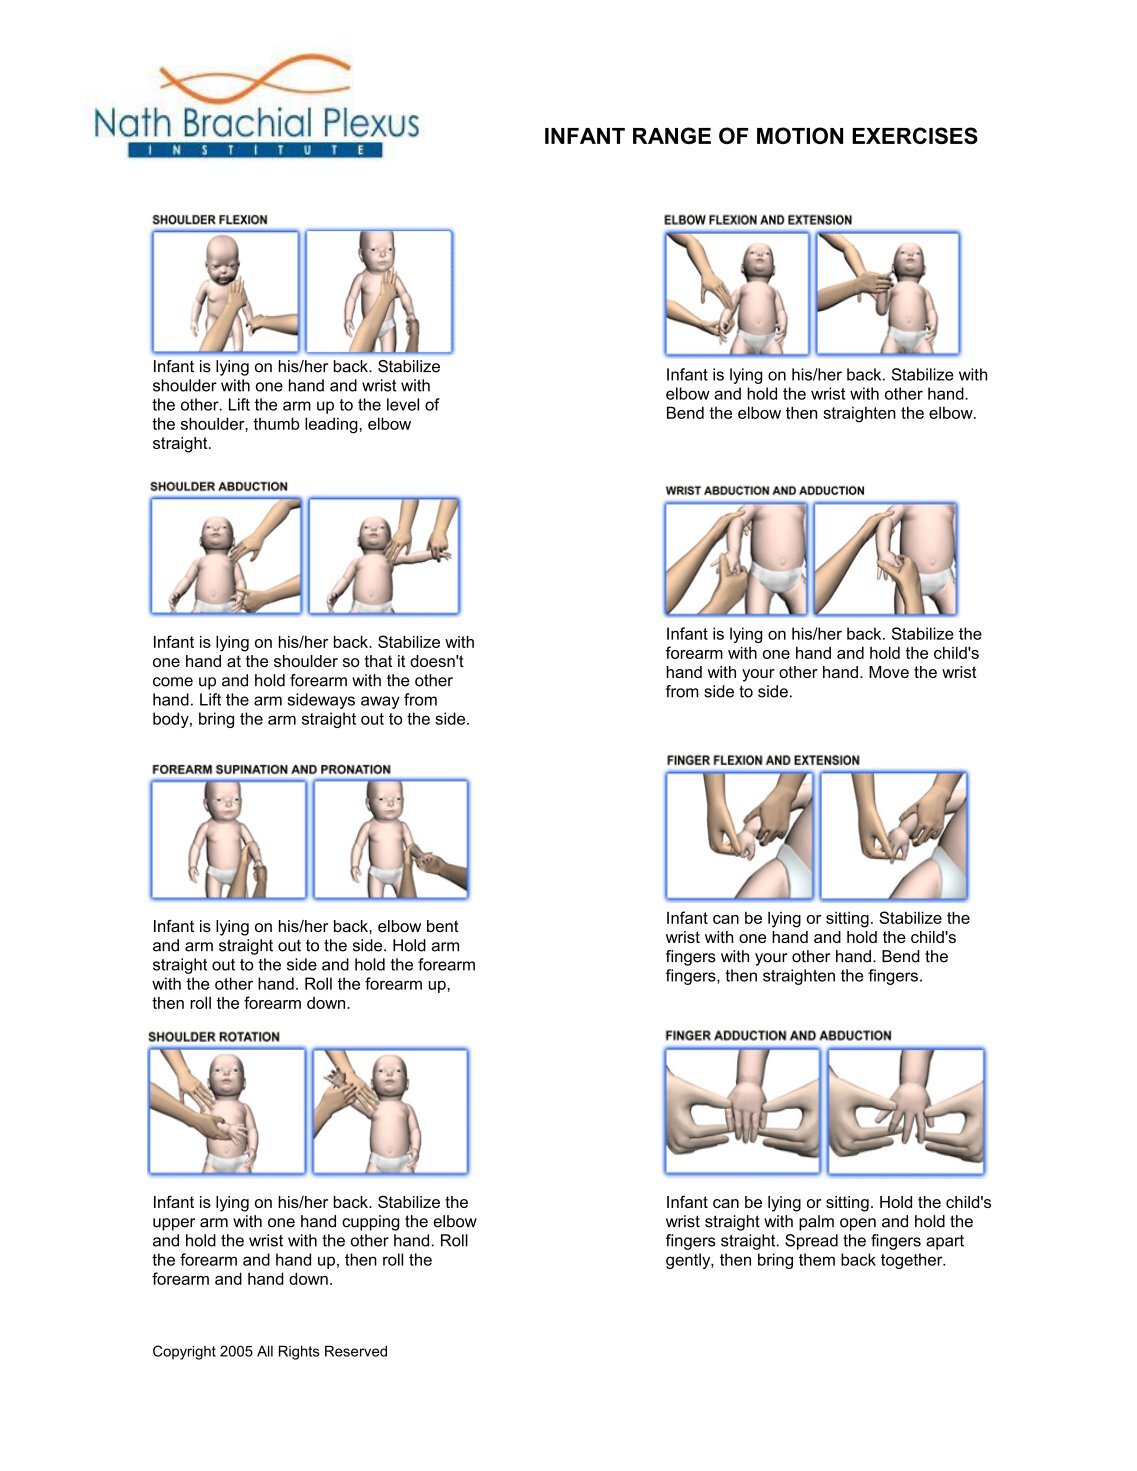 Brachial Plexus Therapy Exercises